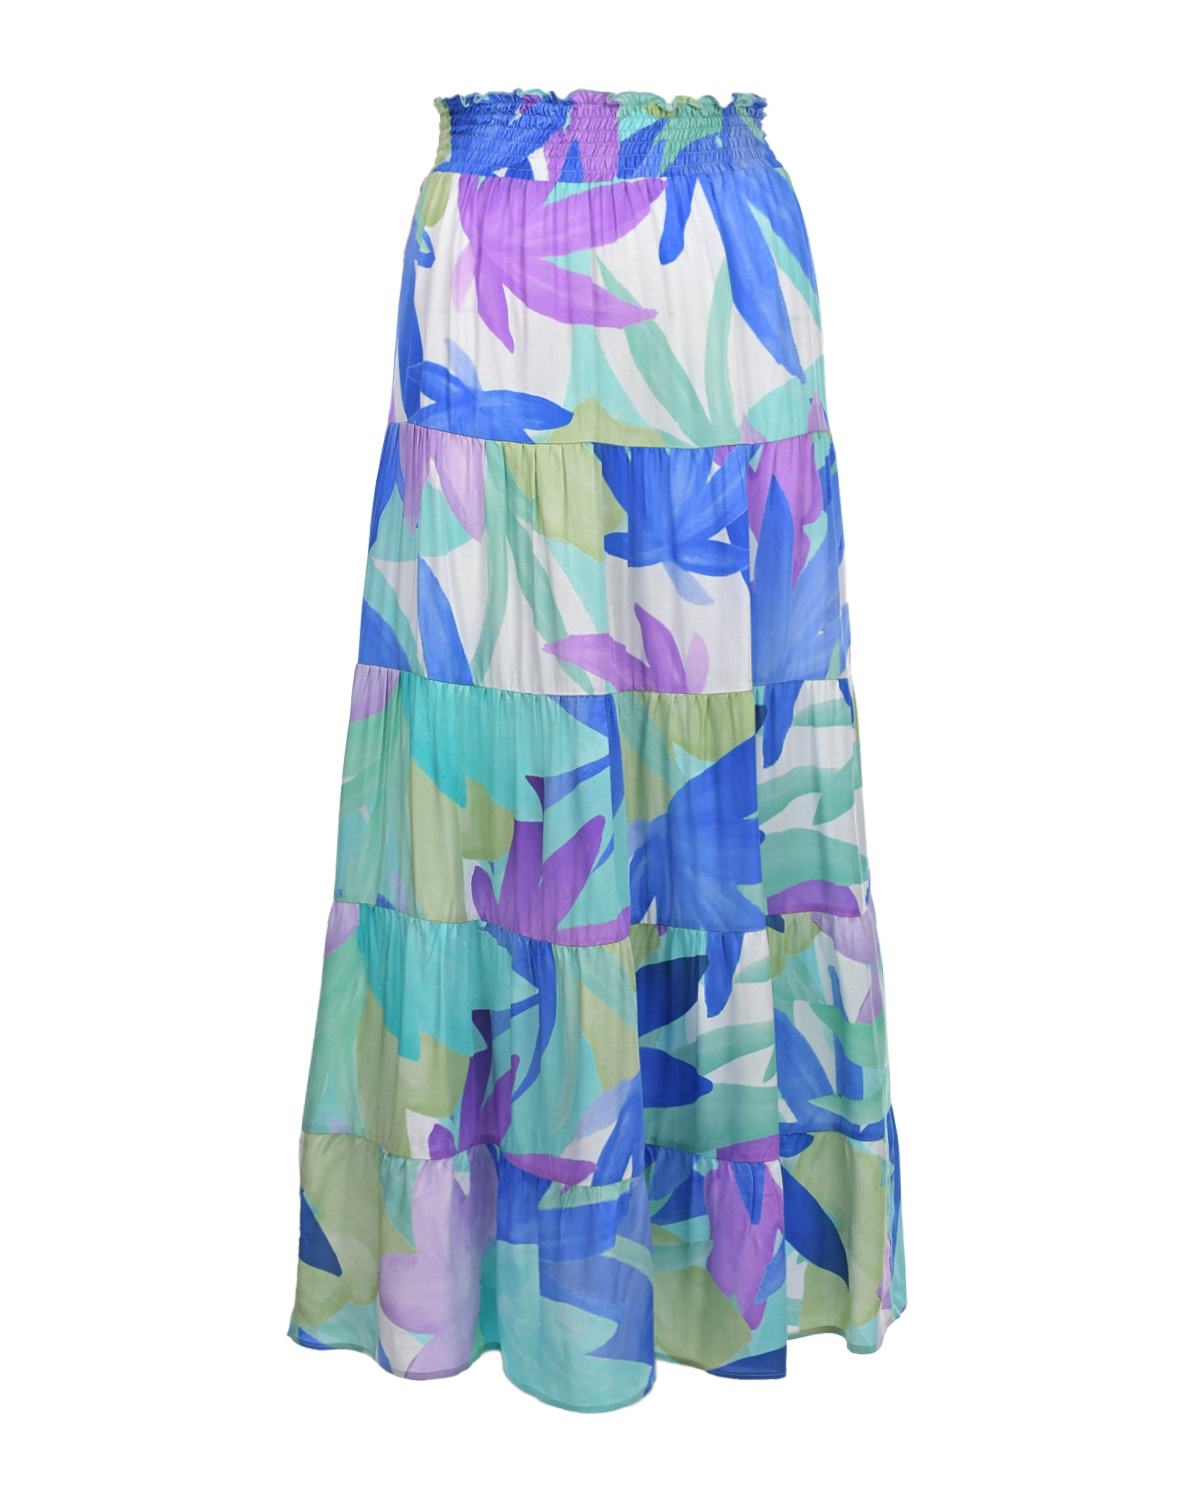 Синяя юбка с растительным принтом Pietro Brunelli синяя юбка мини в складку с принтом в клетку для девочки gsk017549 14 164